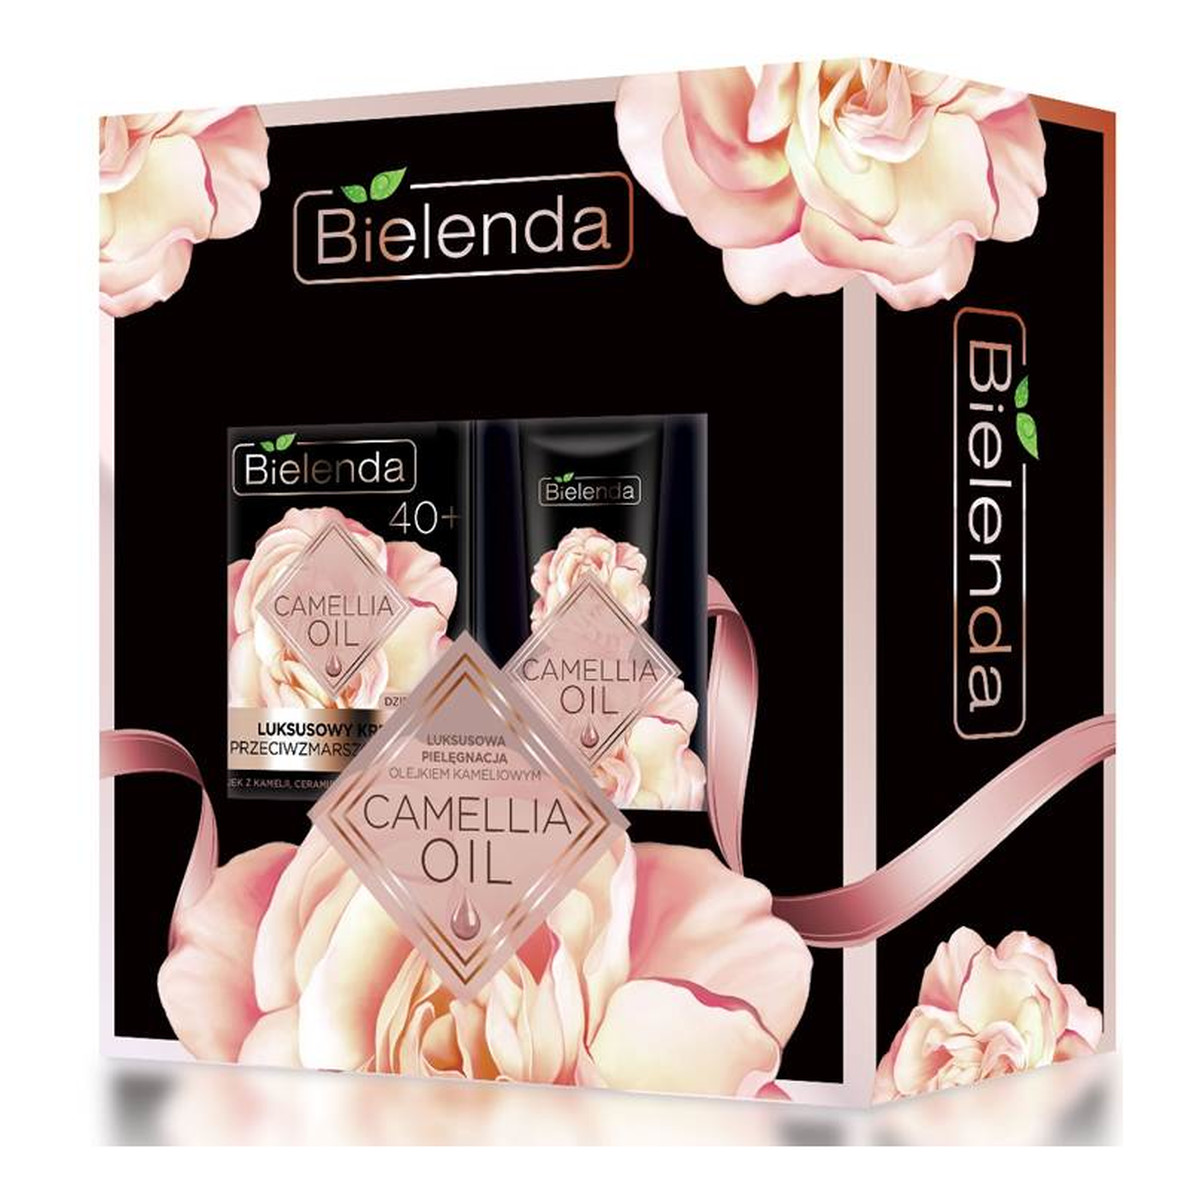 Bielenda Camellia Oil 40+ Zestaw kosmetyków